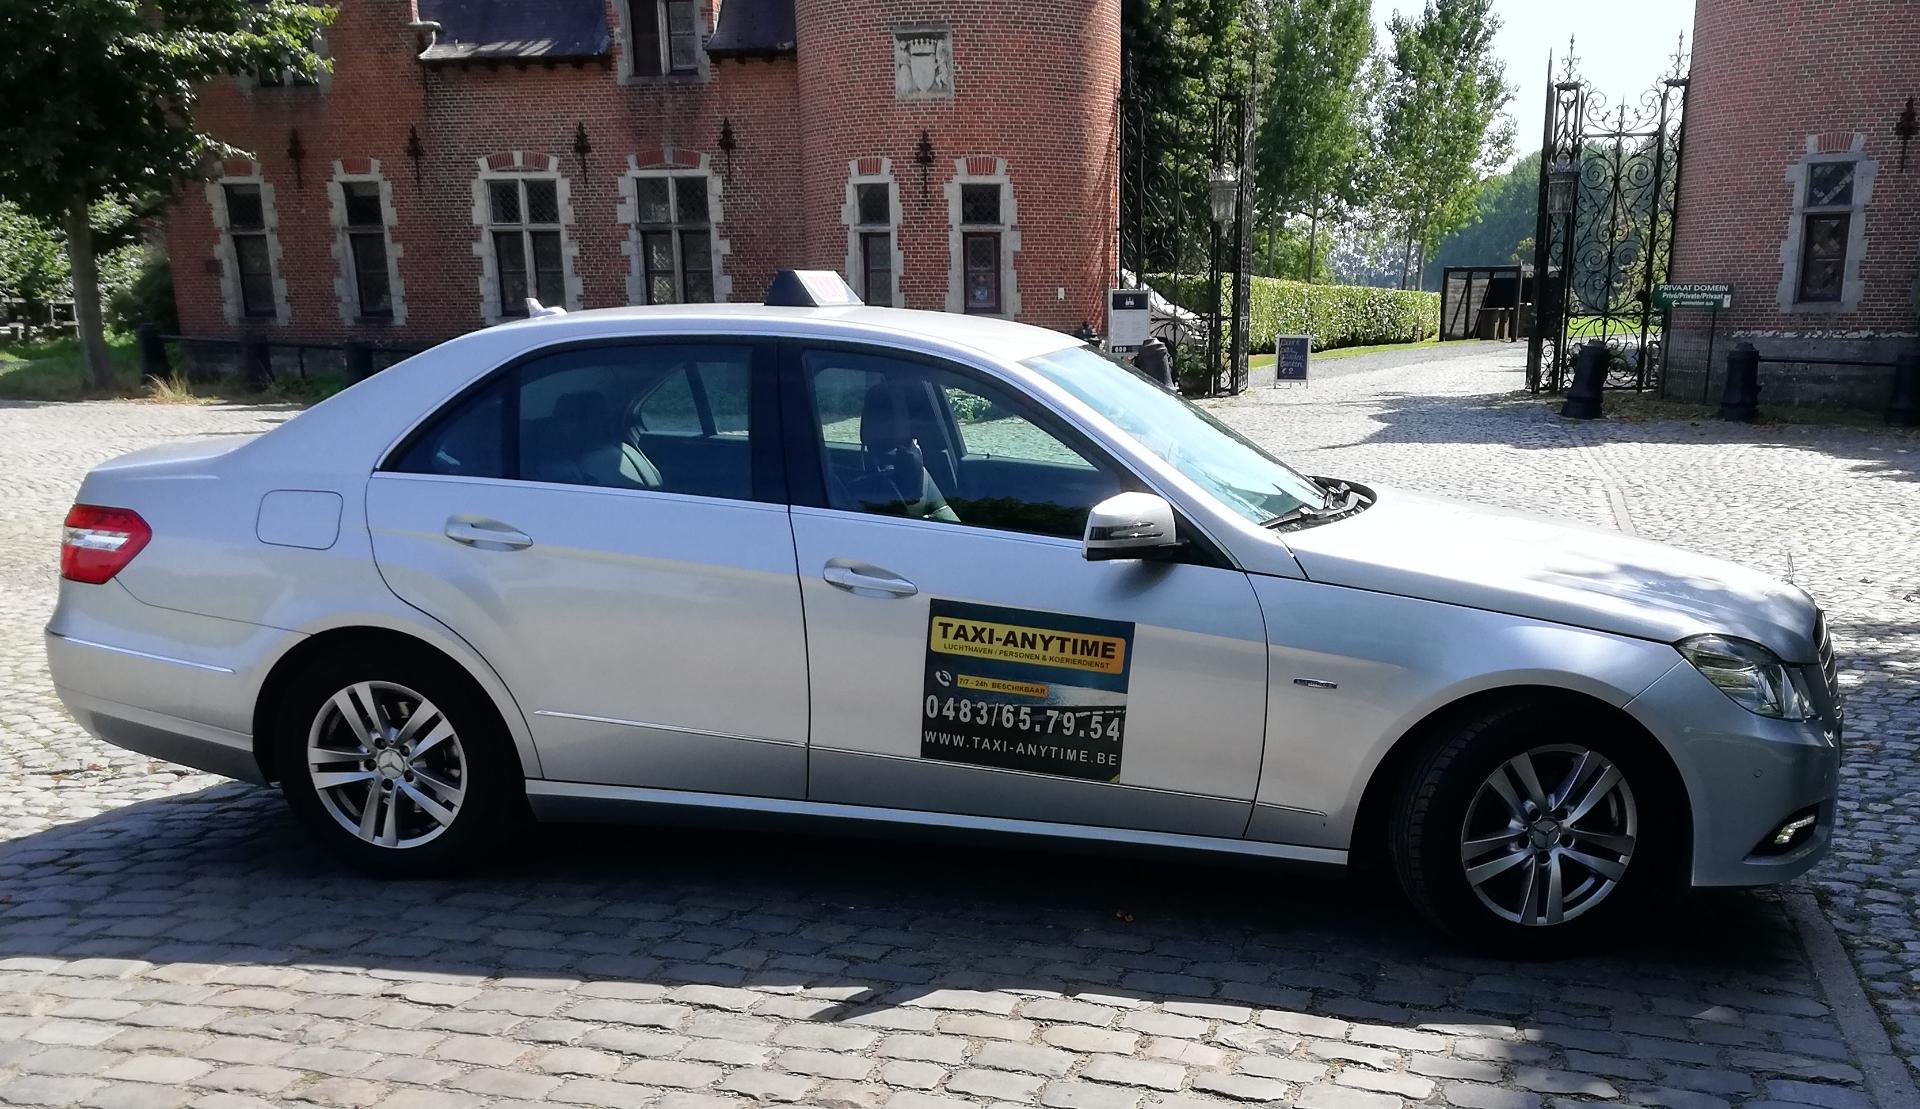 taxibedrijven met luchthavenvervoer Middelkerke Taxi Anytime